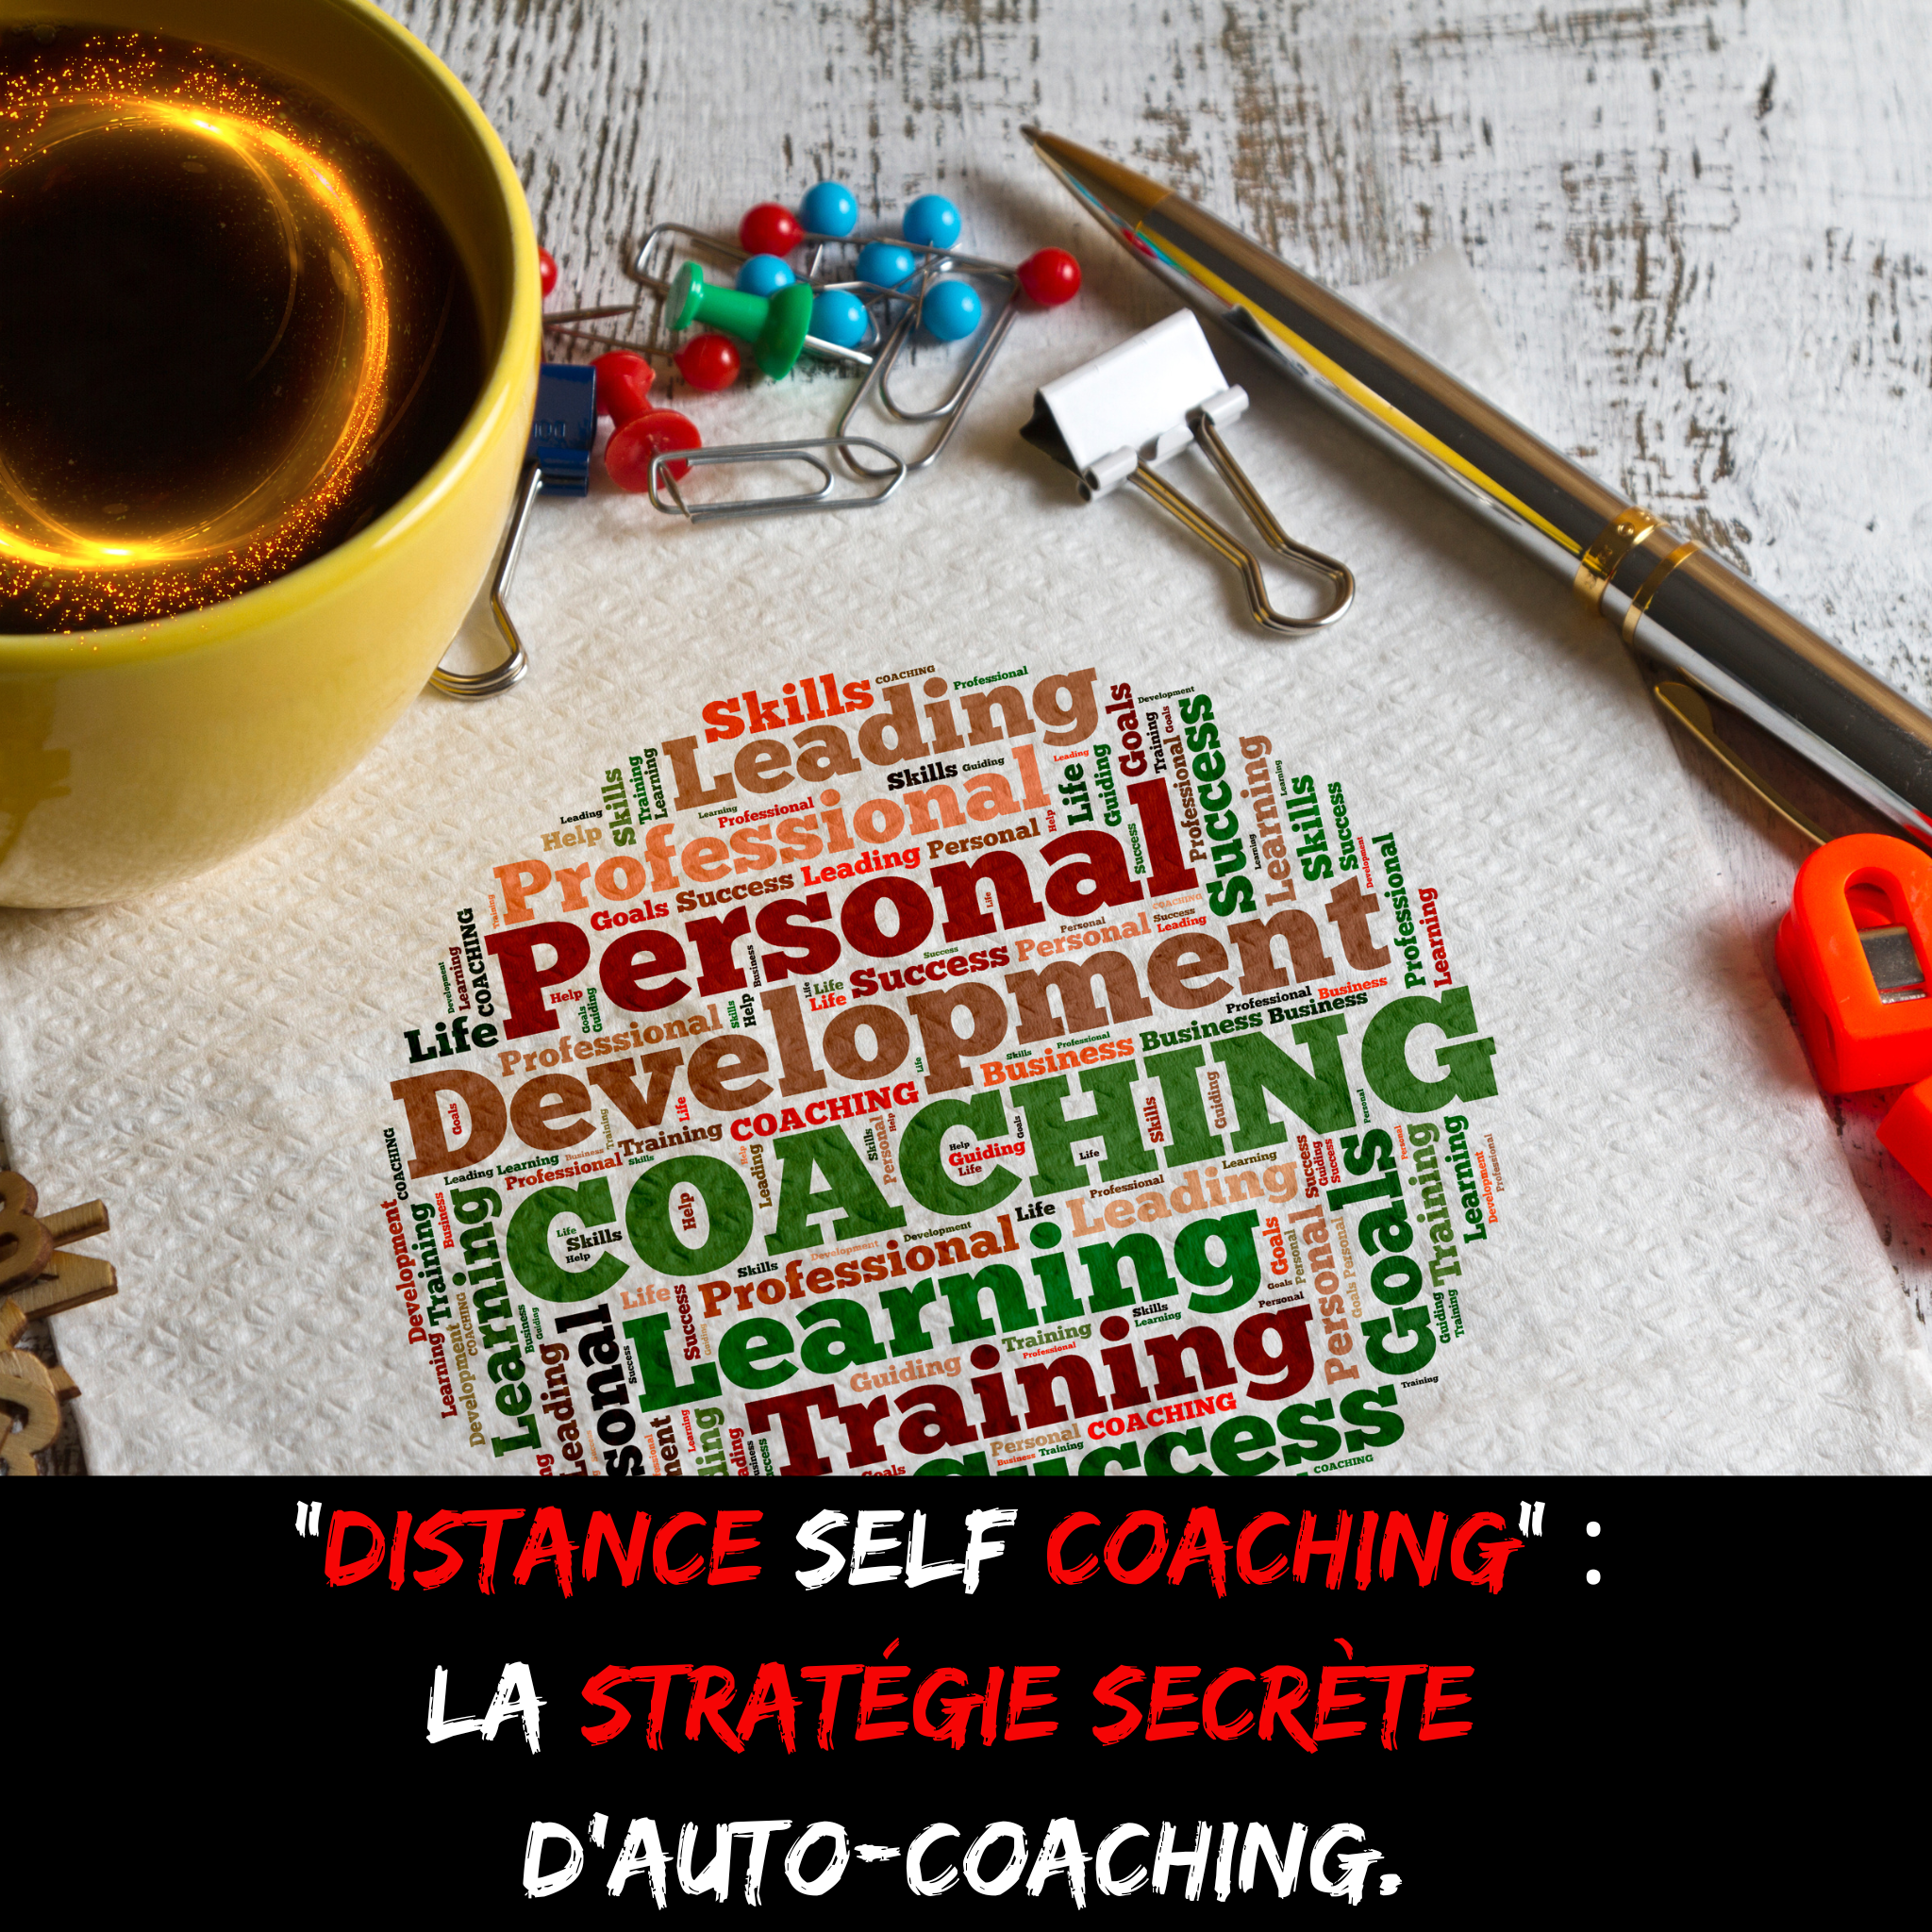 le distance self coaching, outil puissant d'auto-coaching.